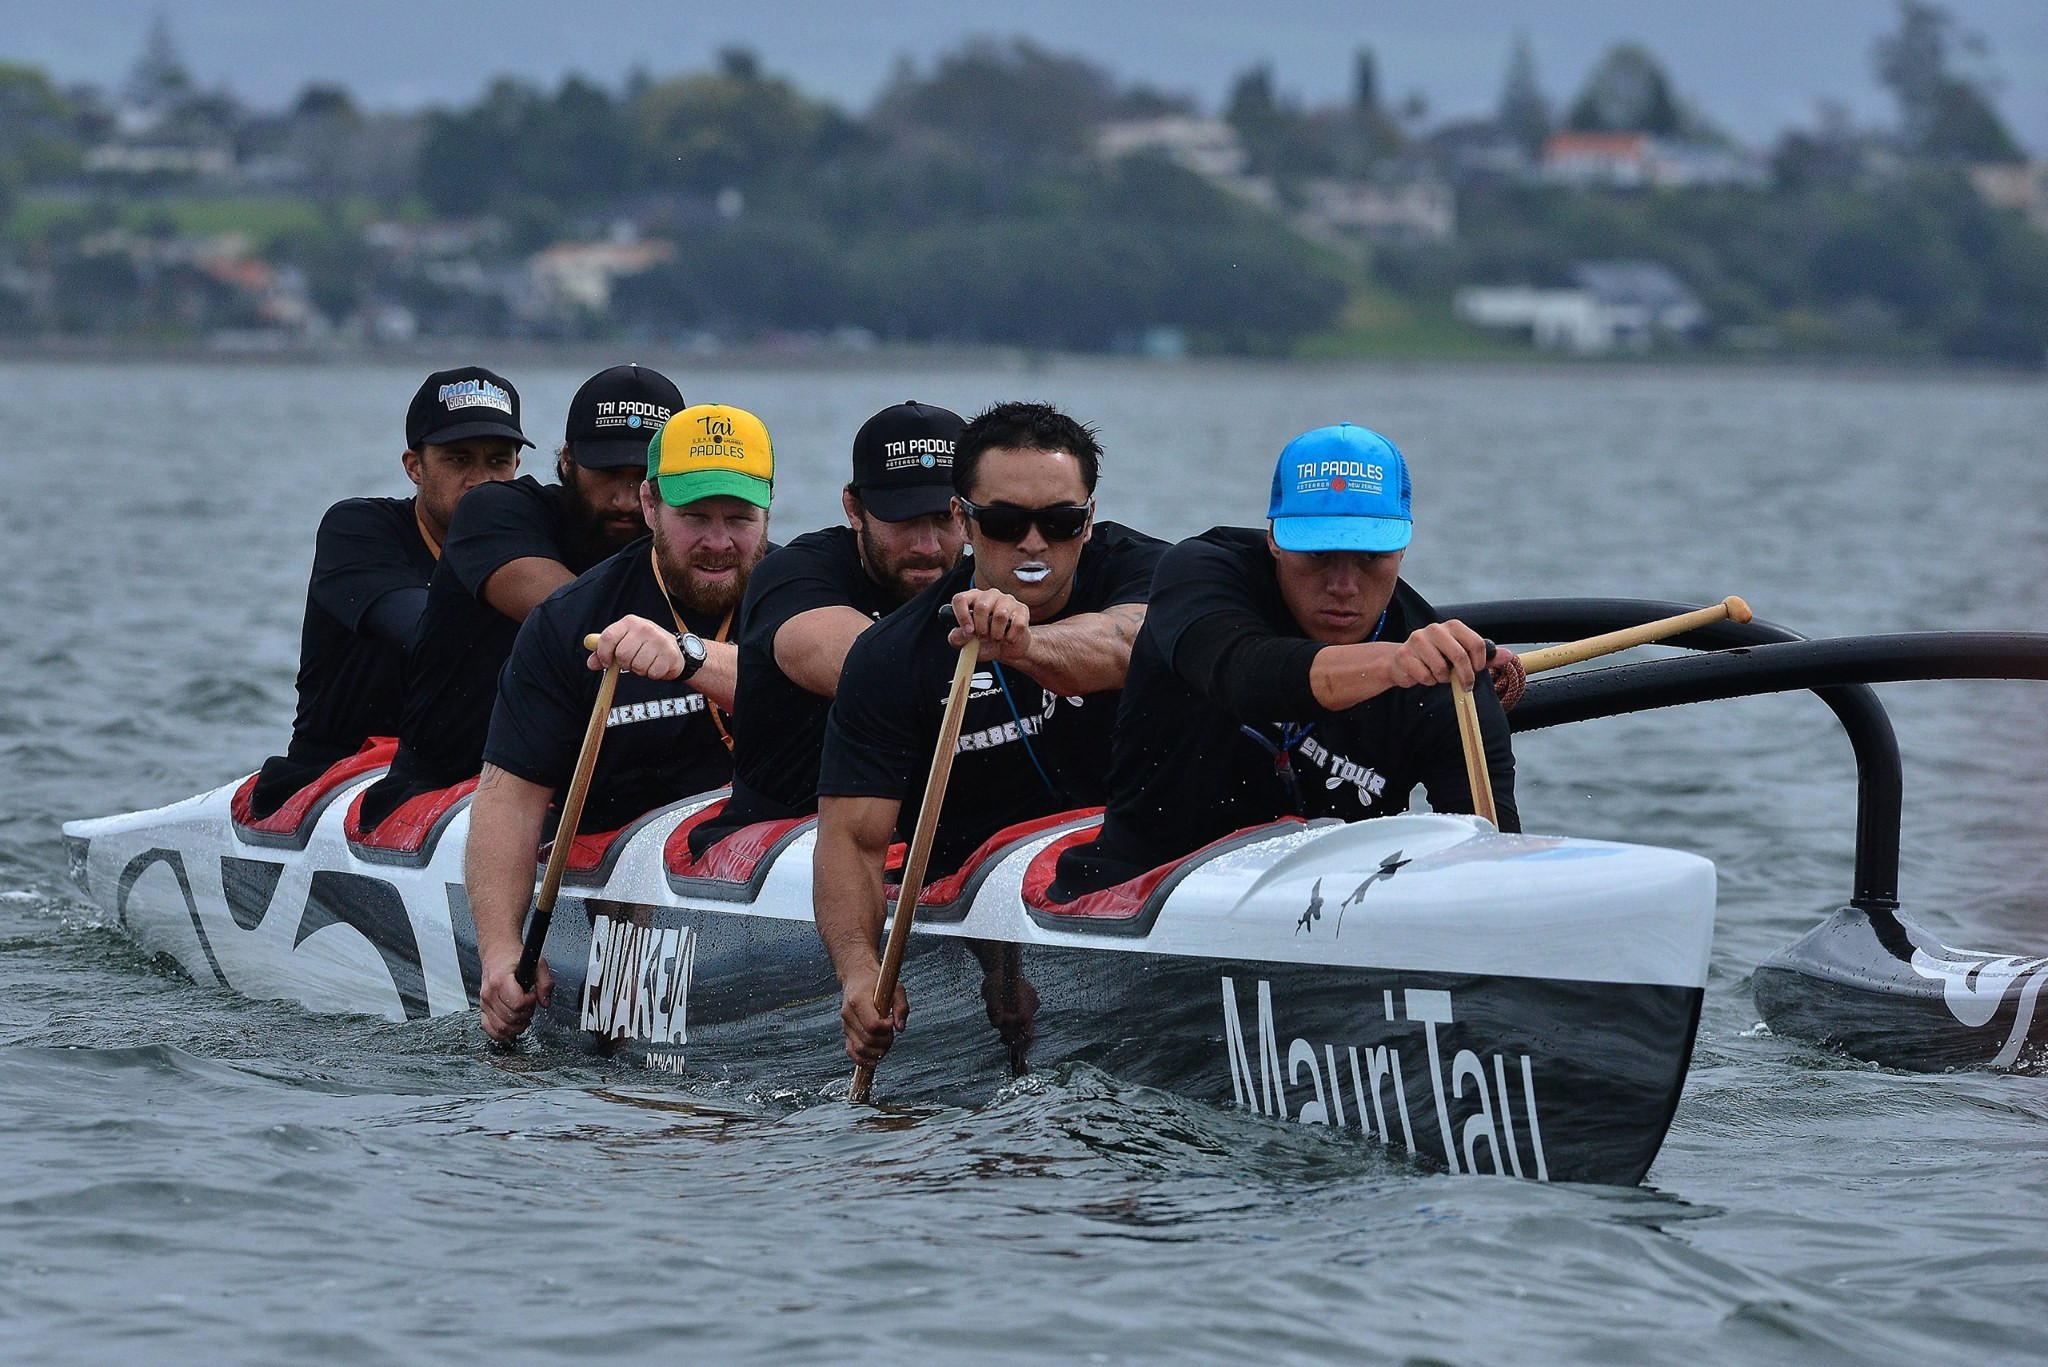 2016 Te Wānanga o Aotearoa Long Distance Nationals Results Day 2